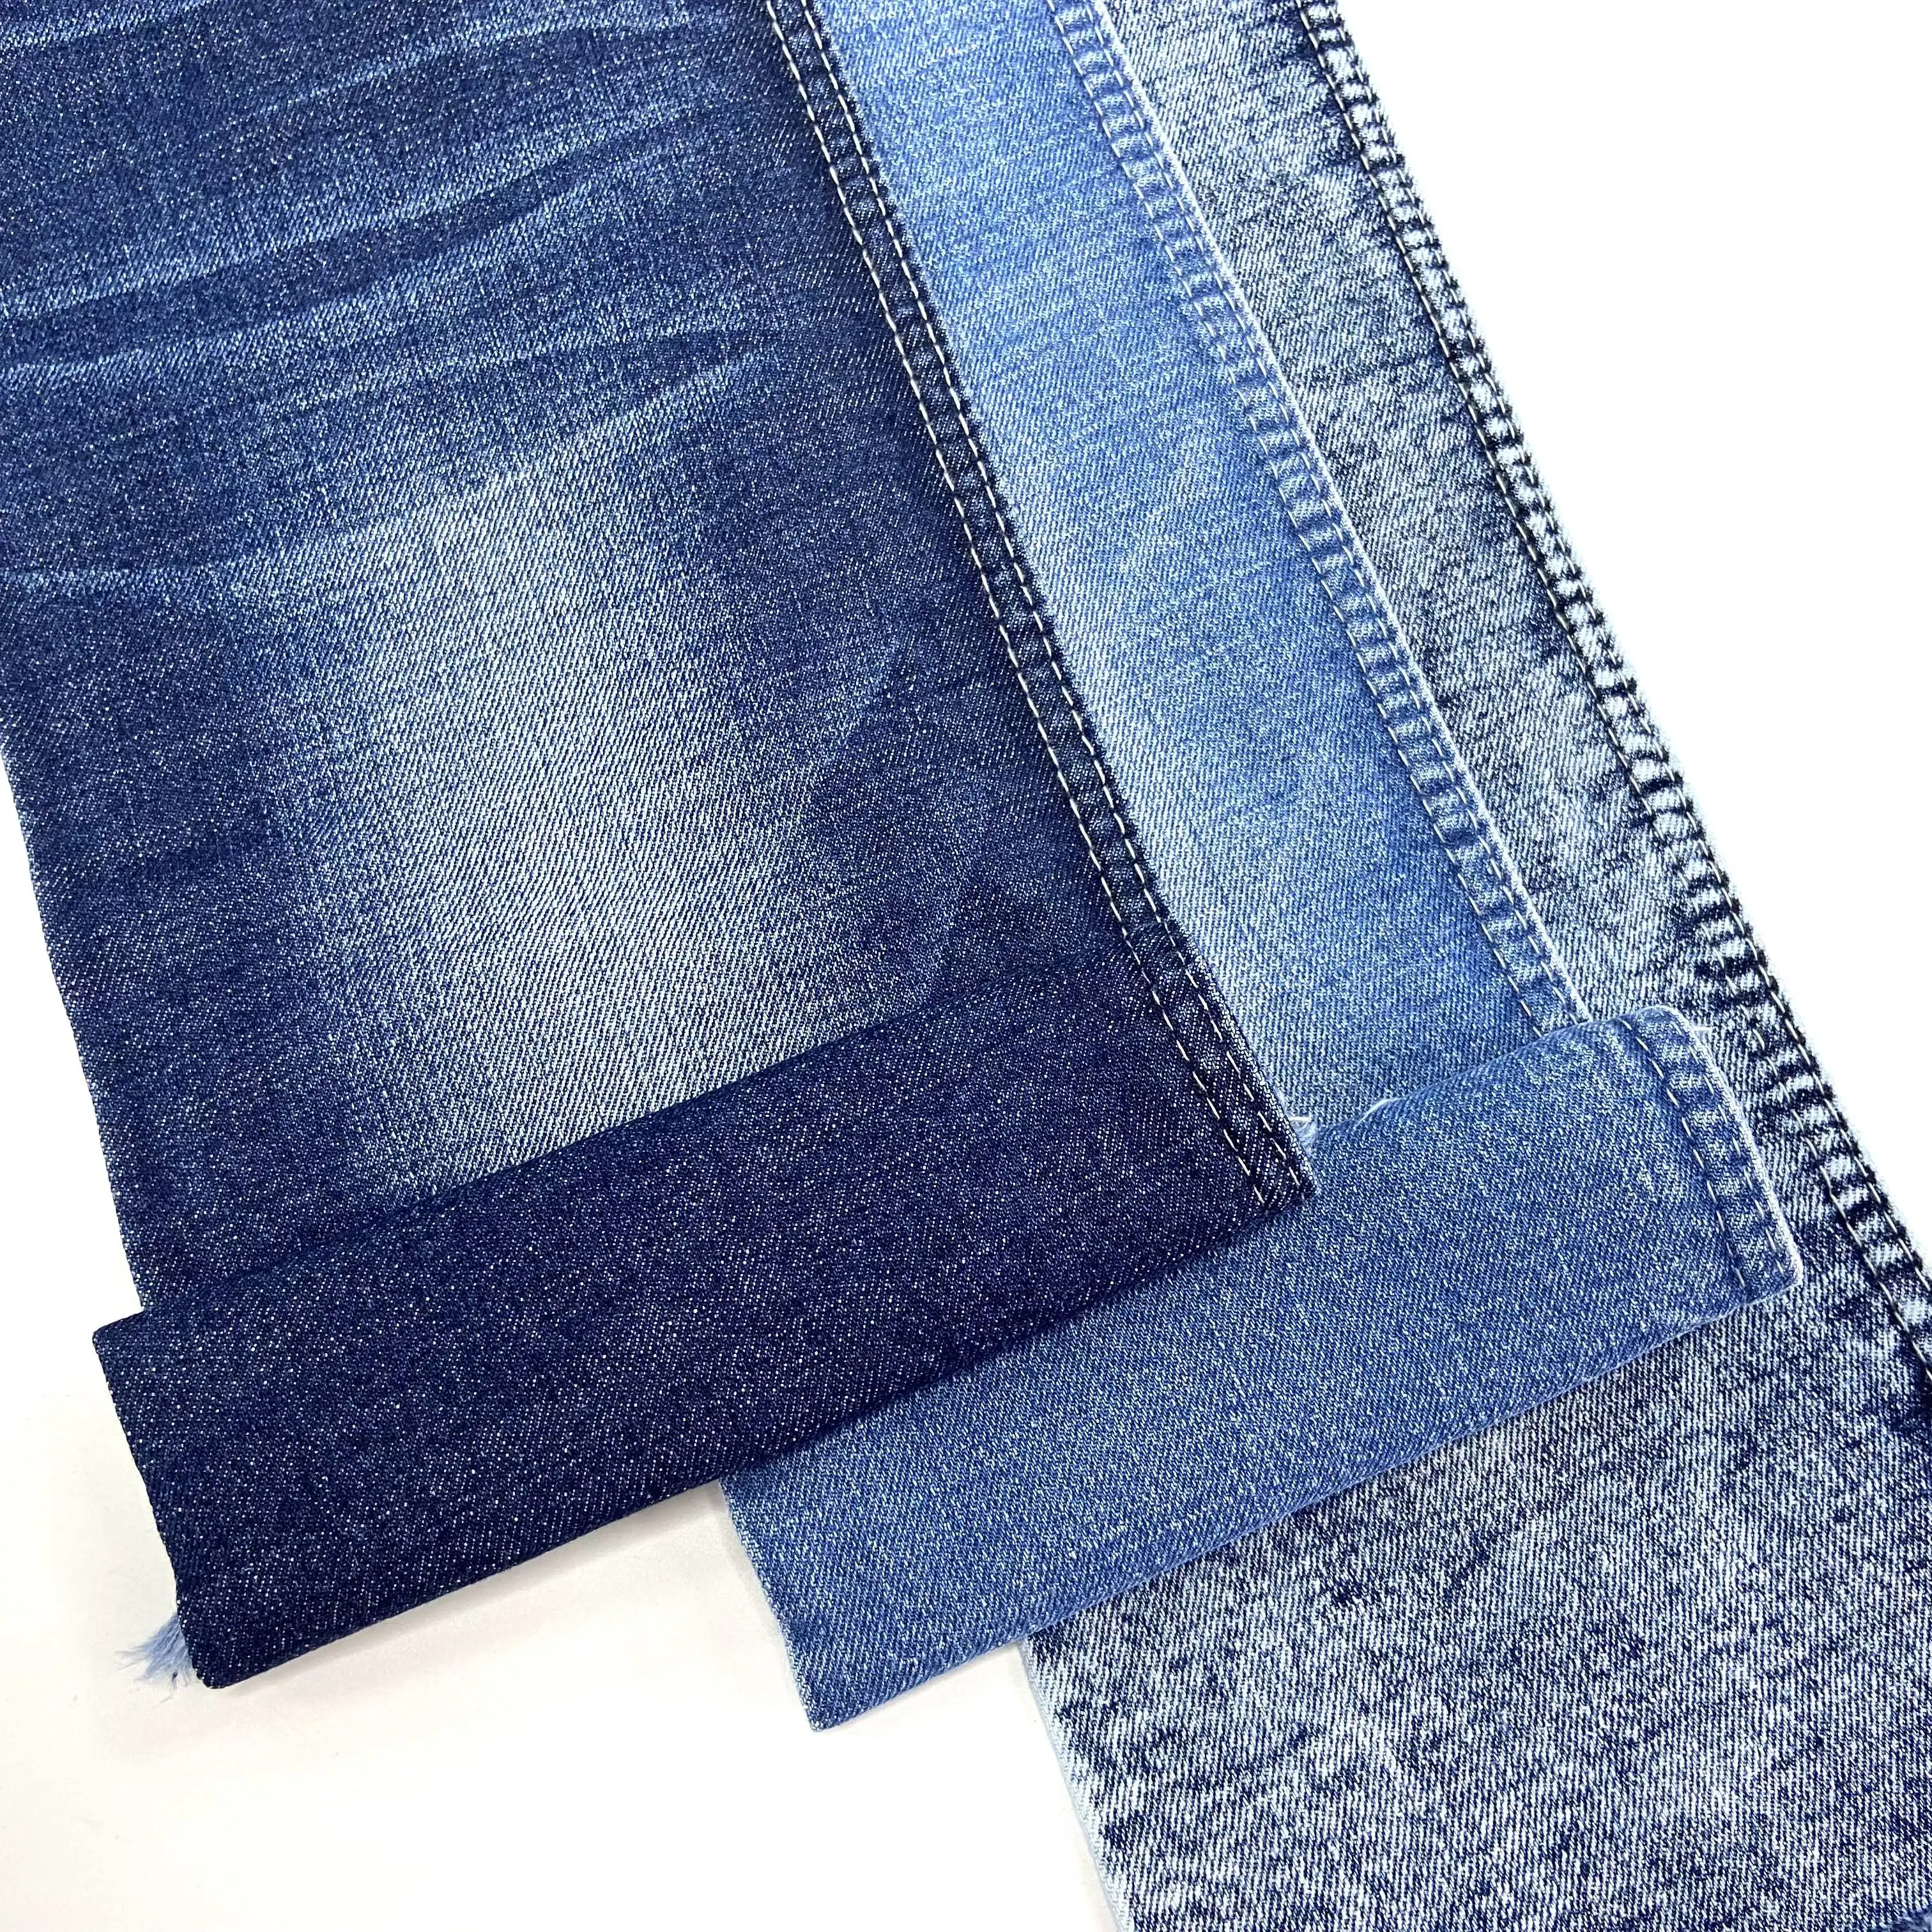 Jean Vải Bao Phủ Nút Denim Vải Giá Tại Ấn Độ Denim Vật Liệu Vải Indigo/Đen/Màu Xanh Và Màu Đen Cho Quần Jean